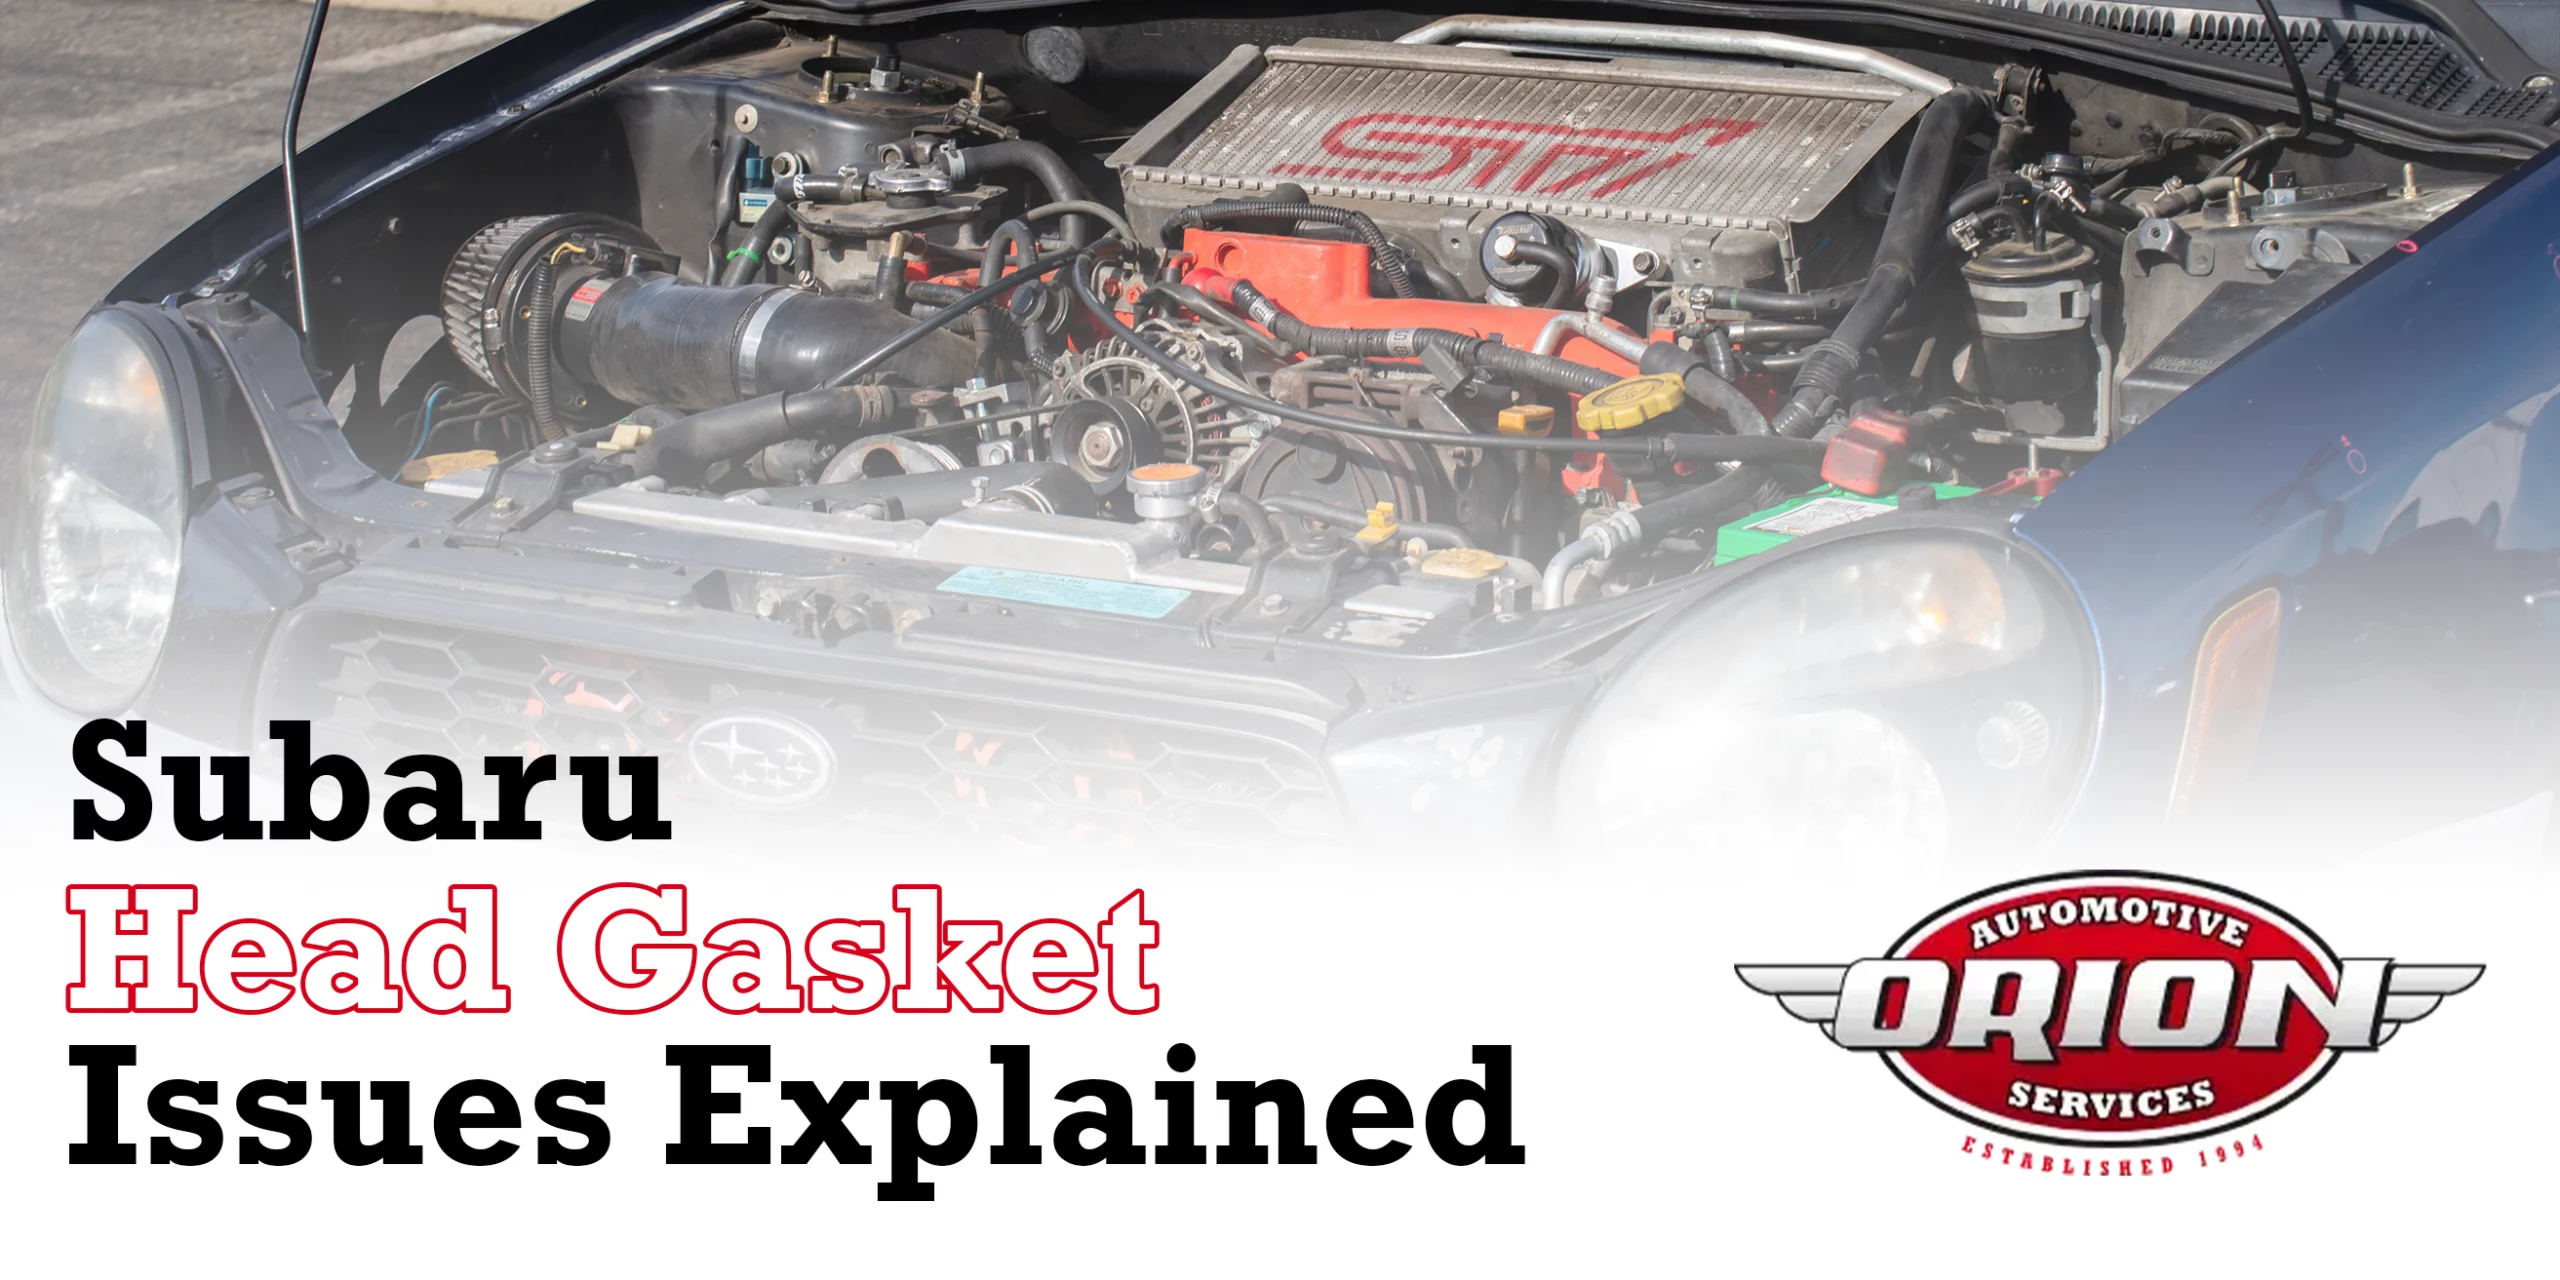 Subaru Head Gasket Issues Explained